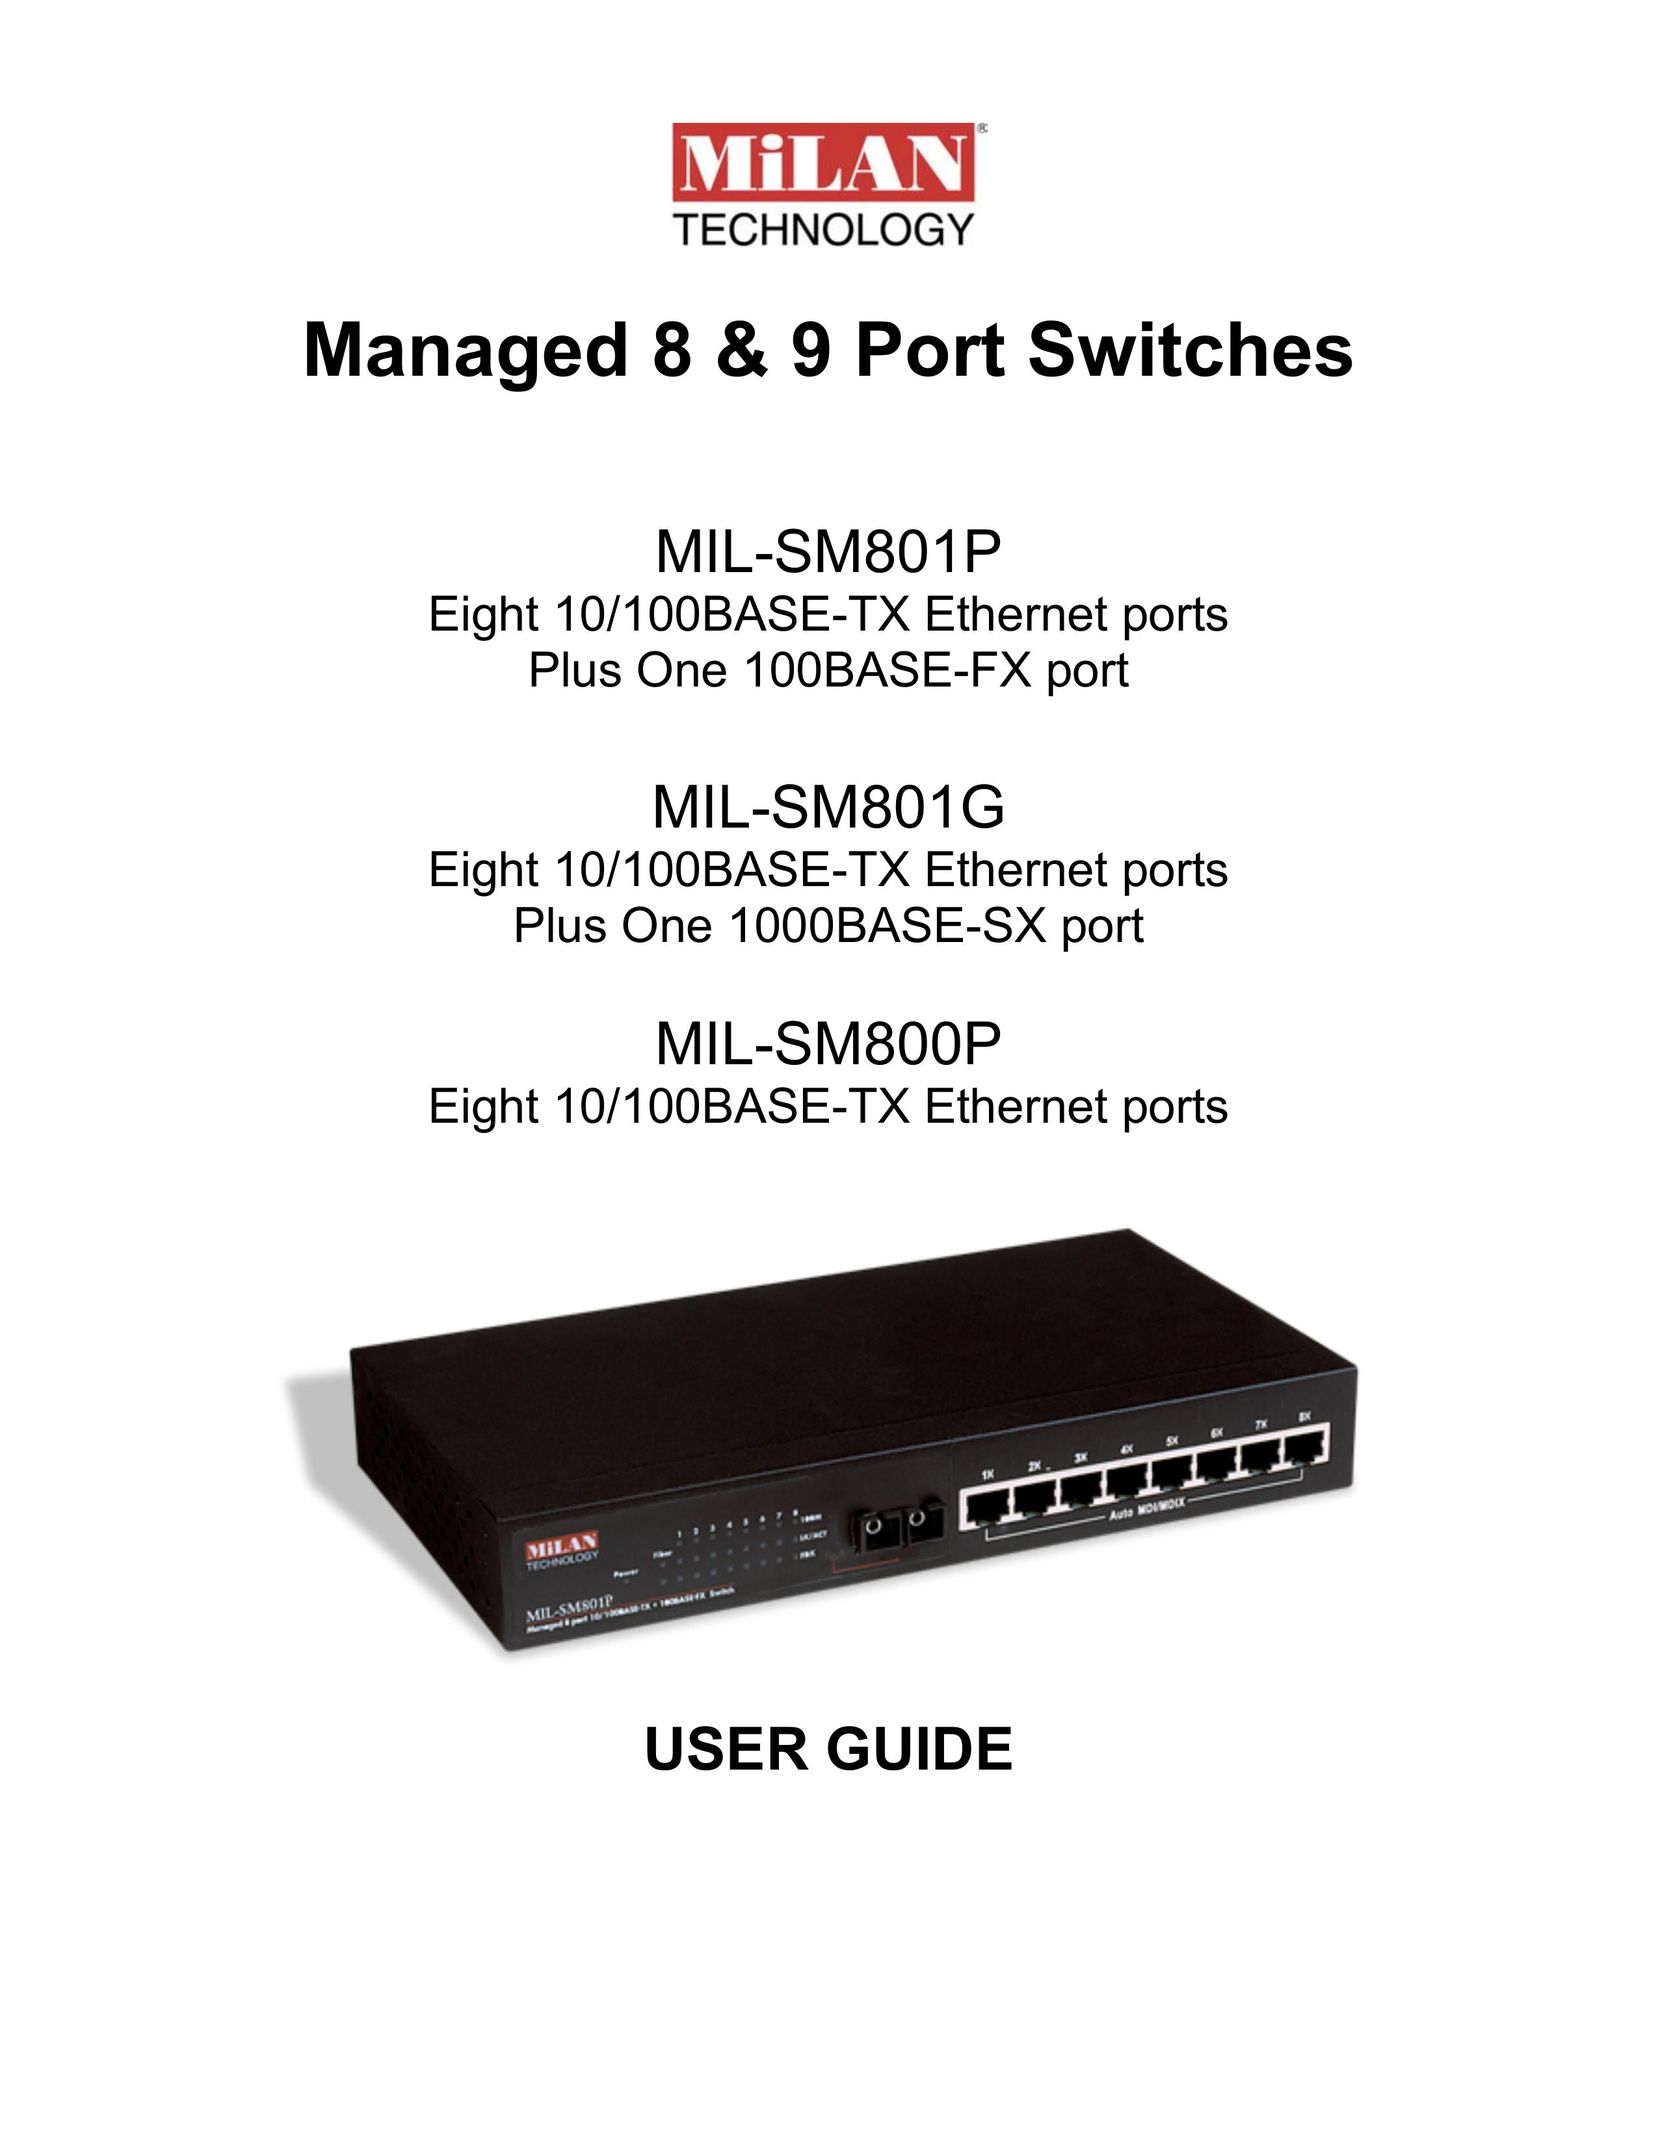 Milan Technology MIL-SM801P Switch User Manual